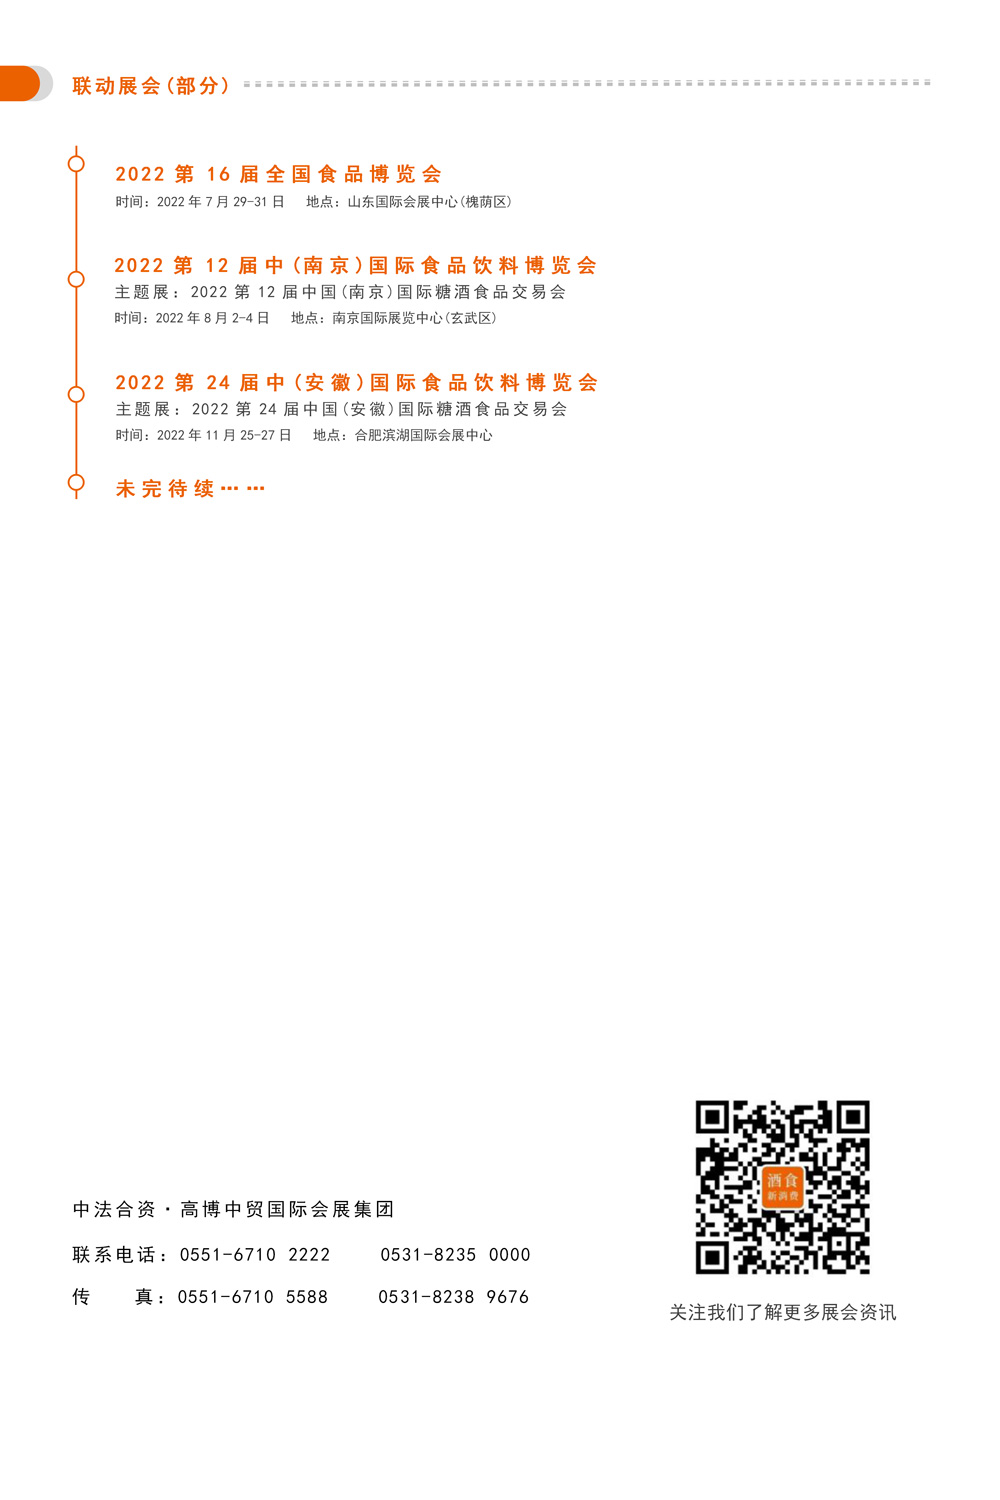 邀请函-2022第10届中国（南京）国际食品饮料博览会(1)_06.jpg